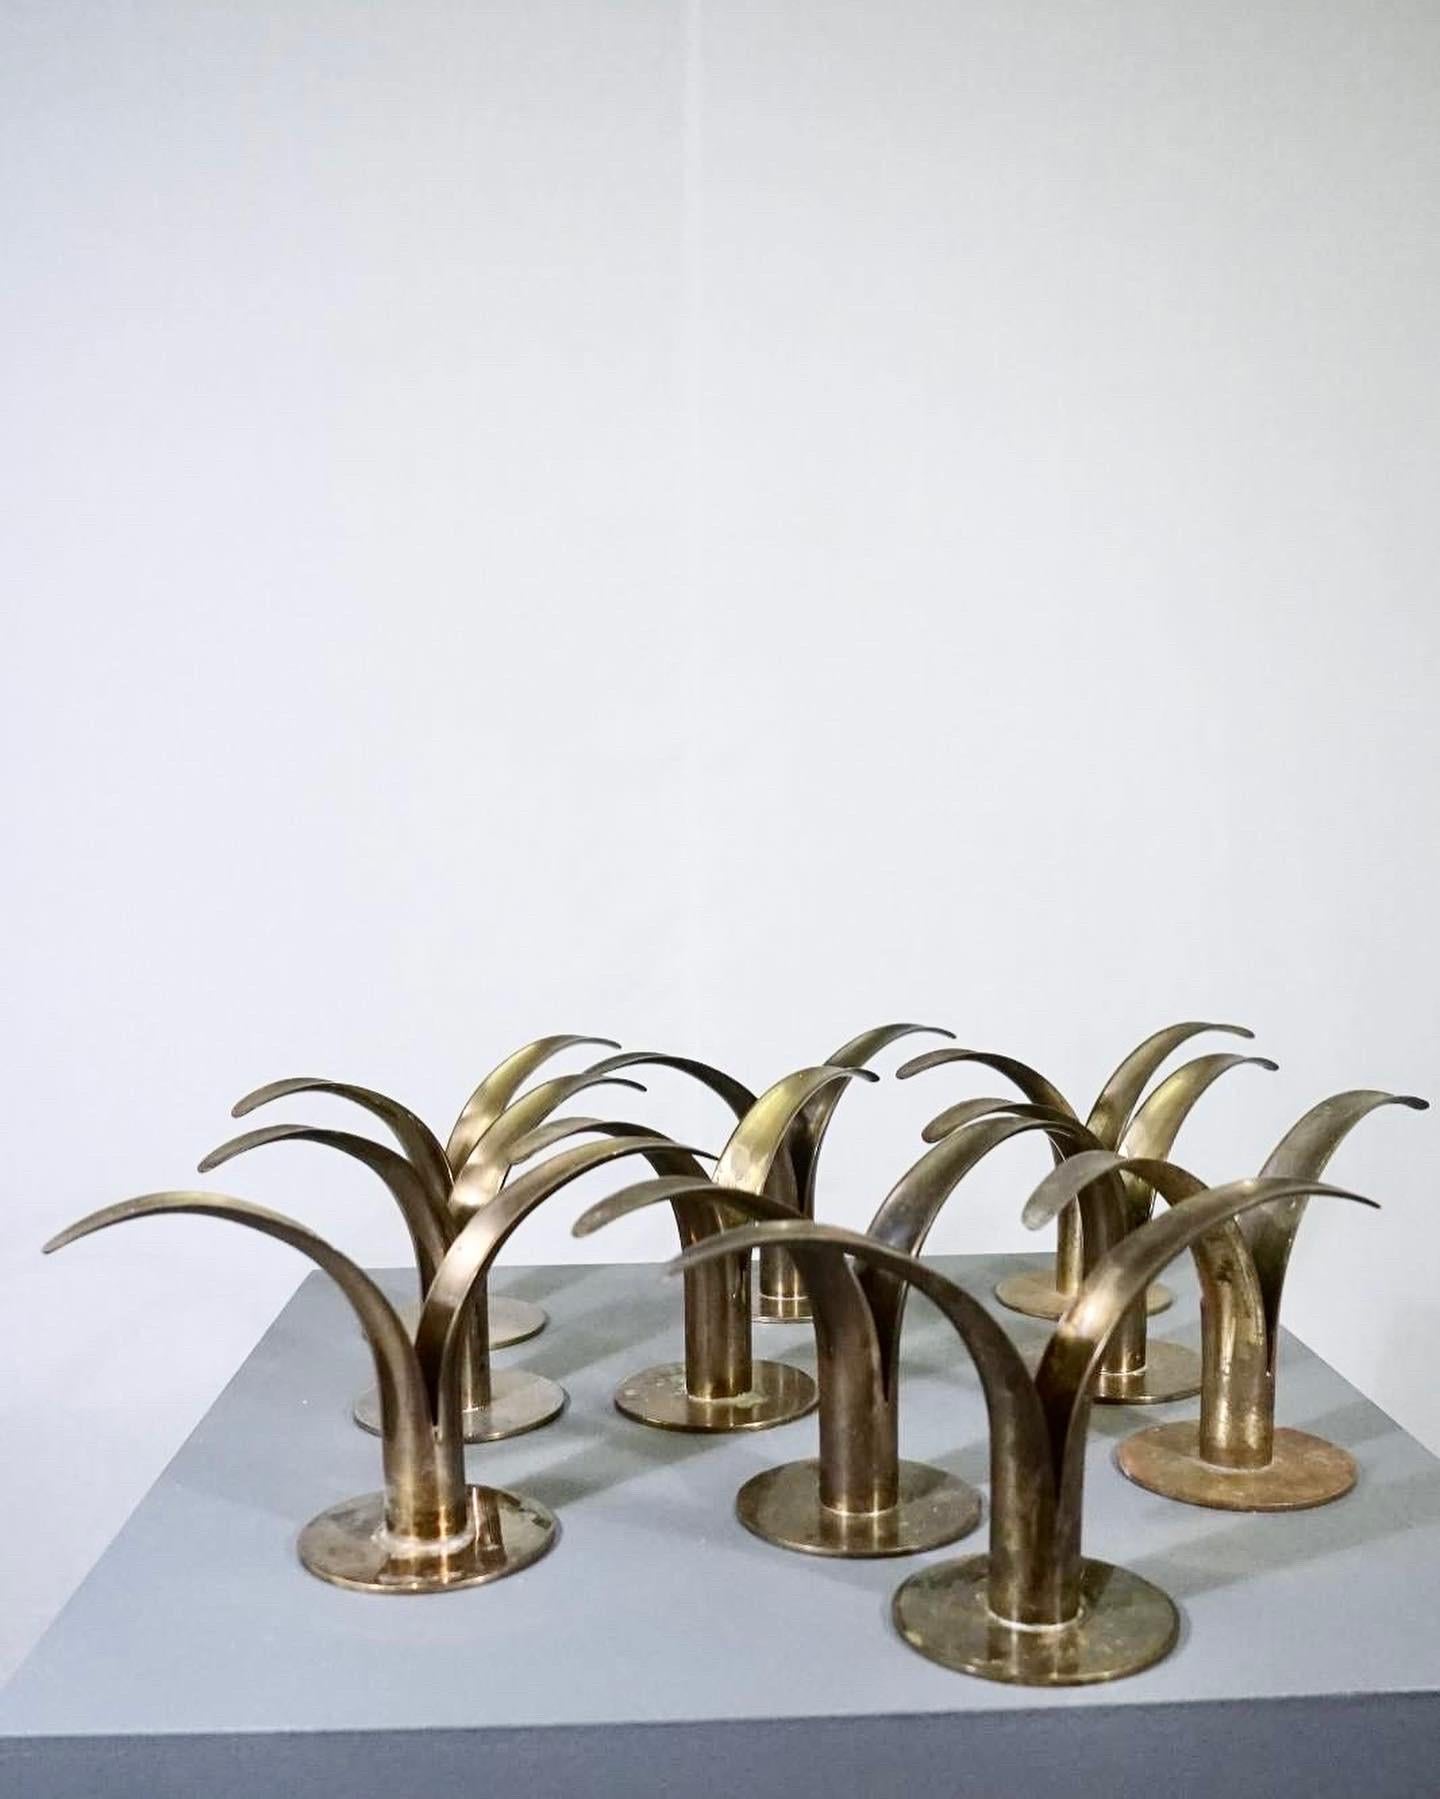 Patinated Set of 10 lily candle holders designed by Ivar Ålenius Björk for Ystad Metal For Sale